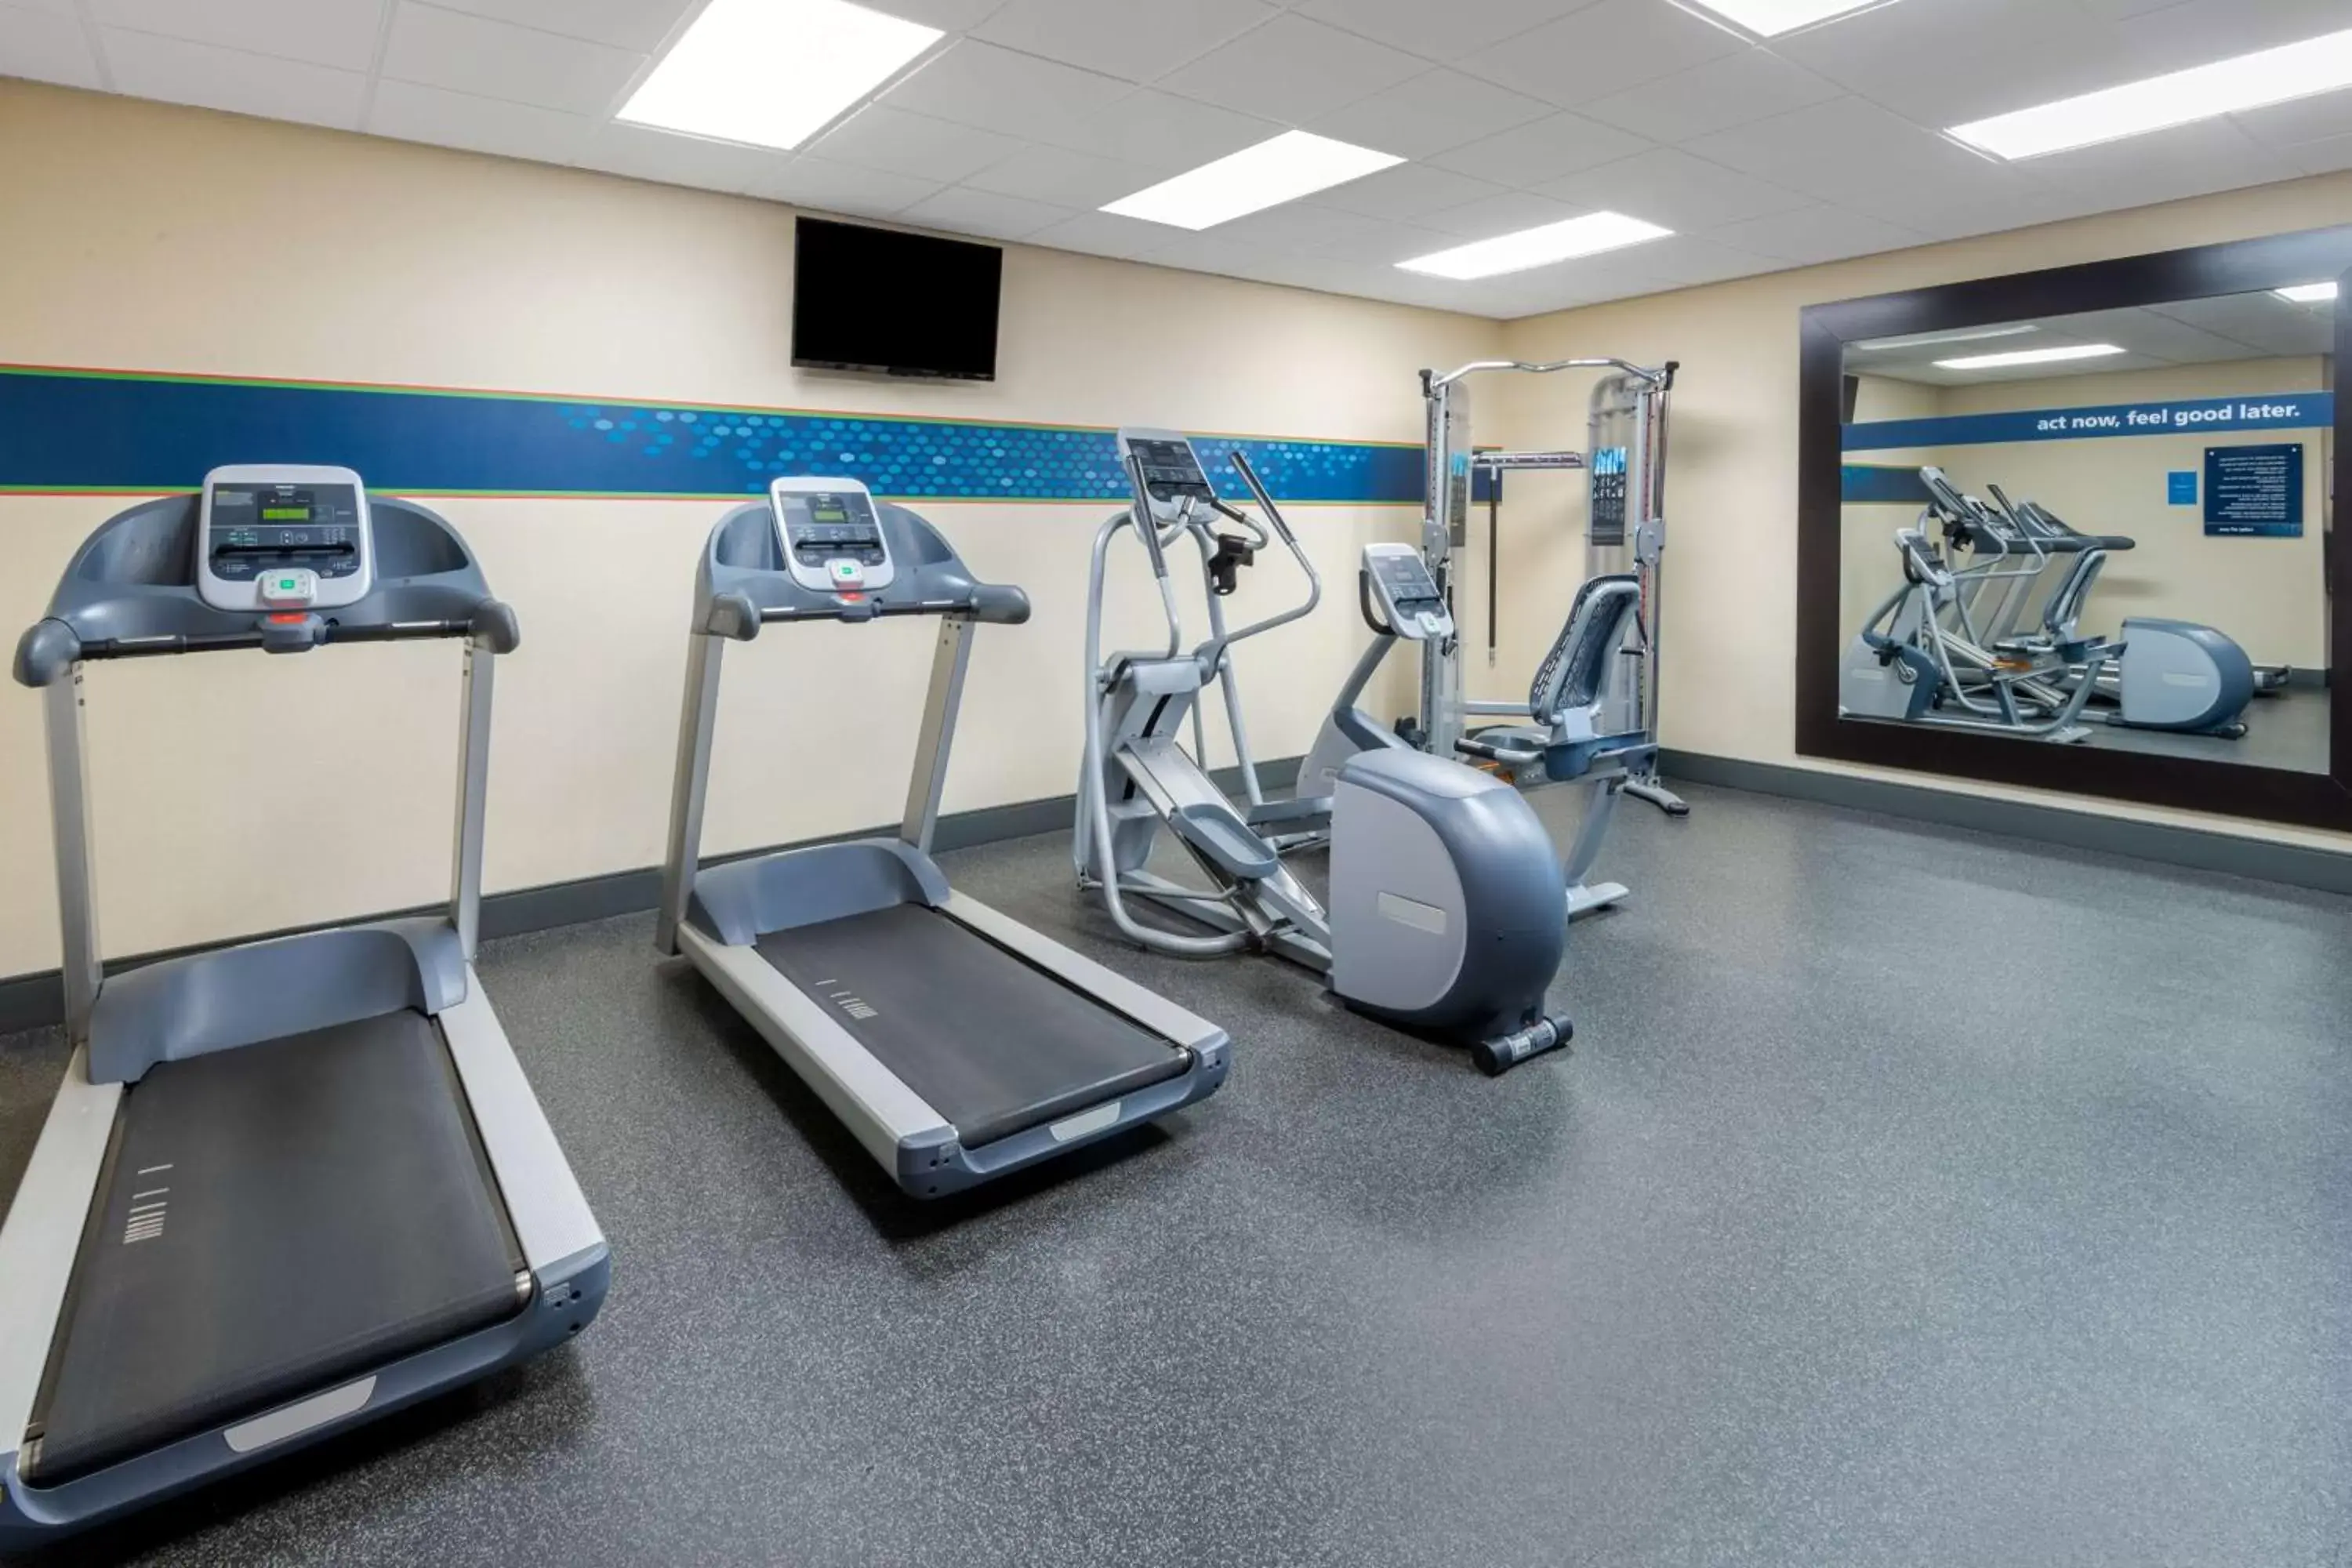 Fitness centre/facilities, Fitness Center/Facilities in Hampton Inn Denver-International Airport